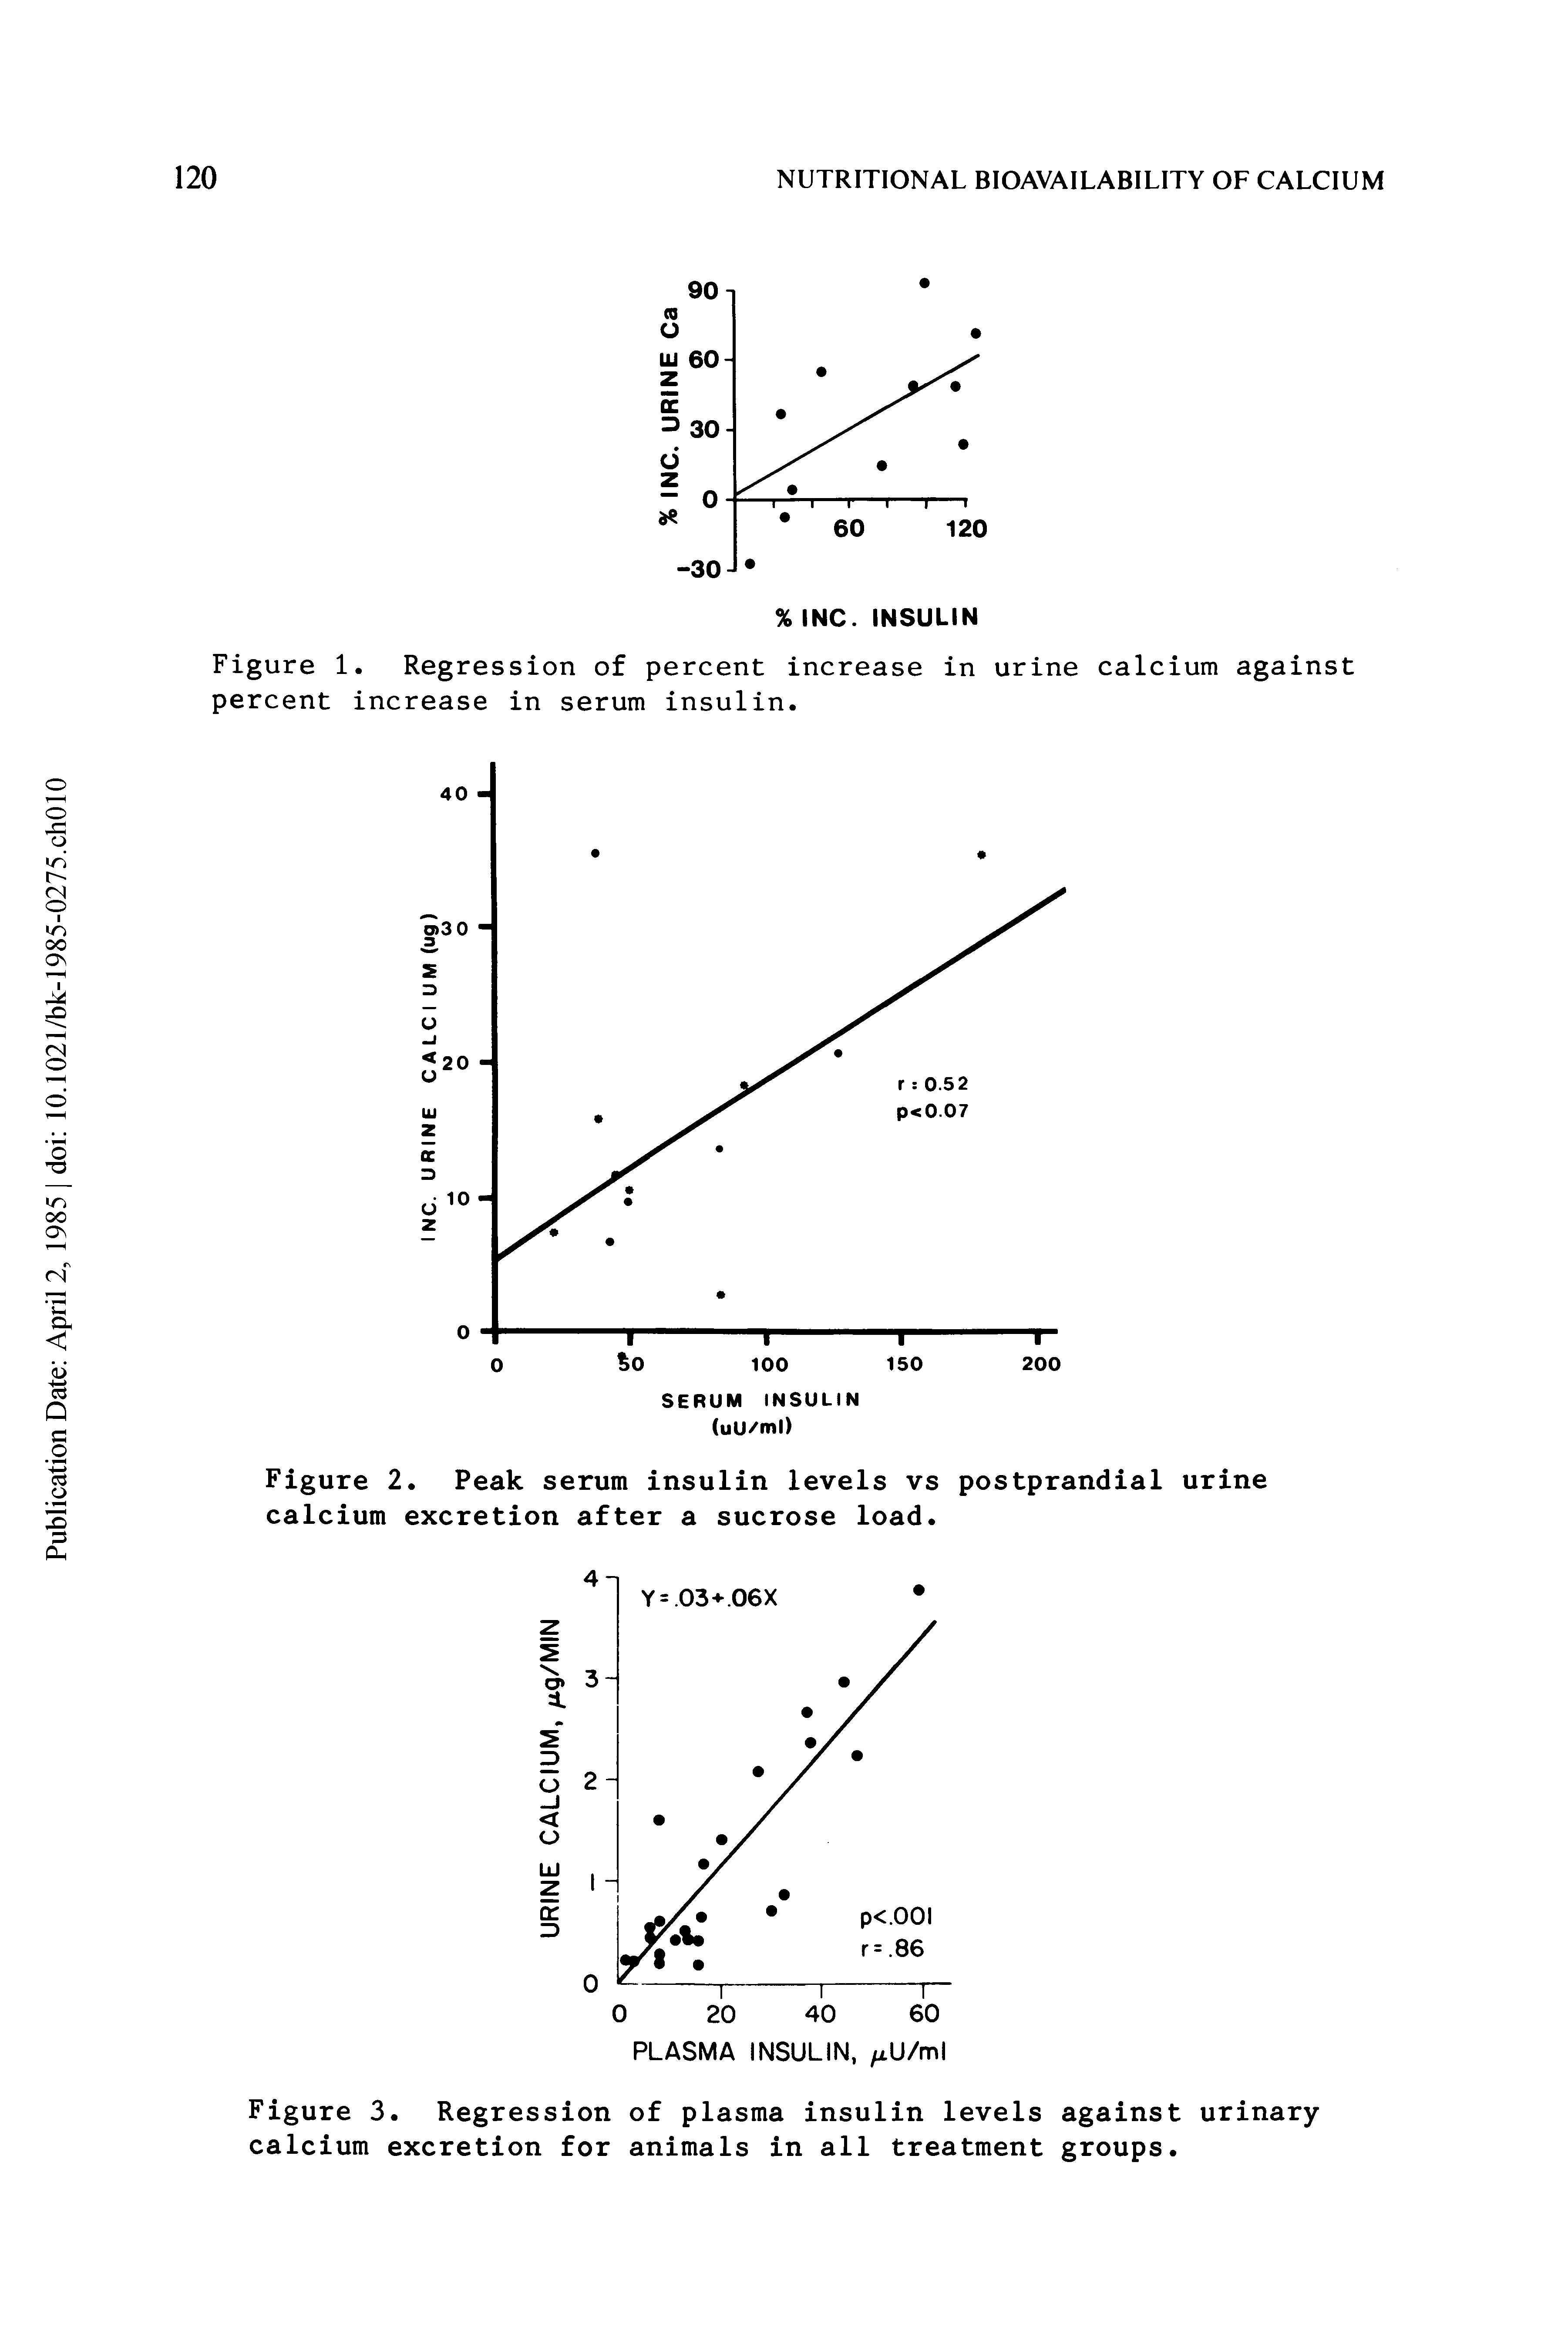 Figure 2. Peak serum insulin levels vs postprandial urine calcium excretion after a sucrose load.